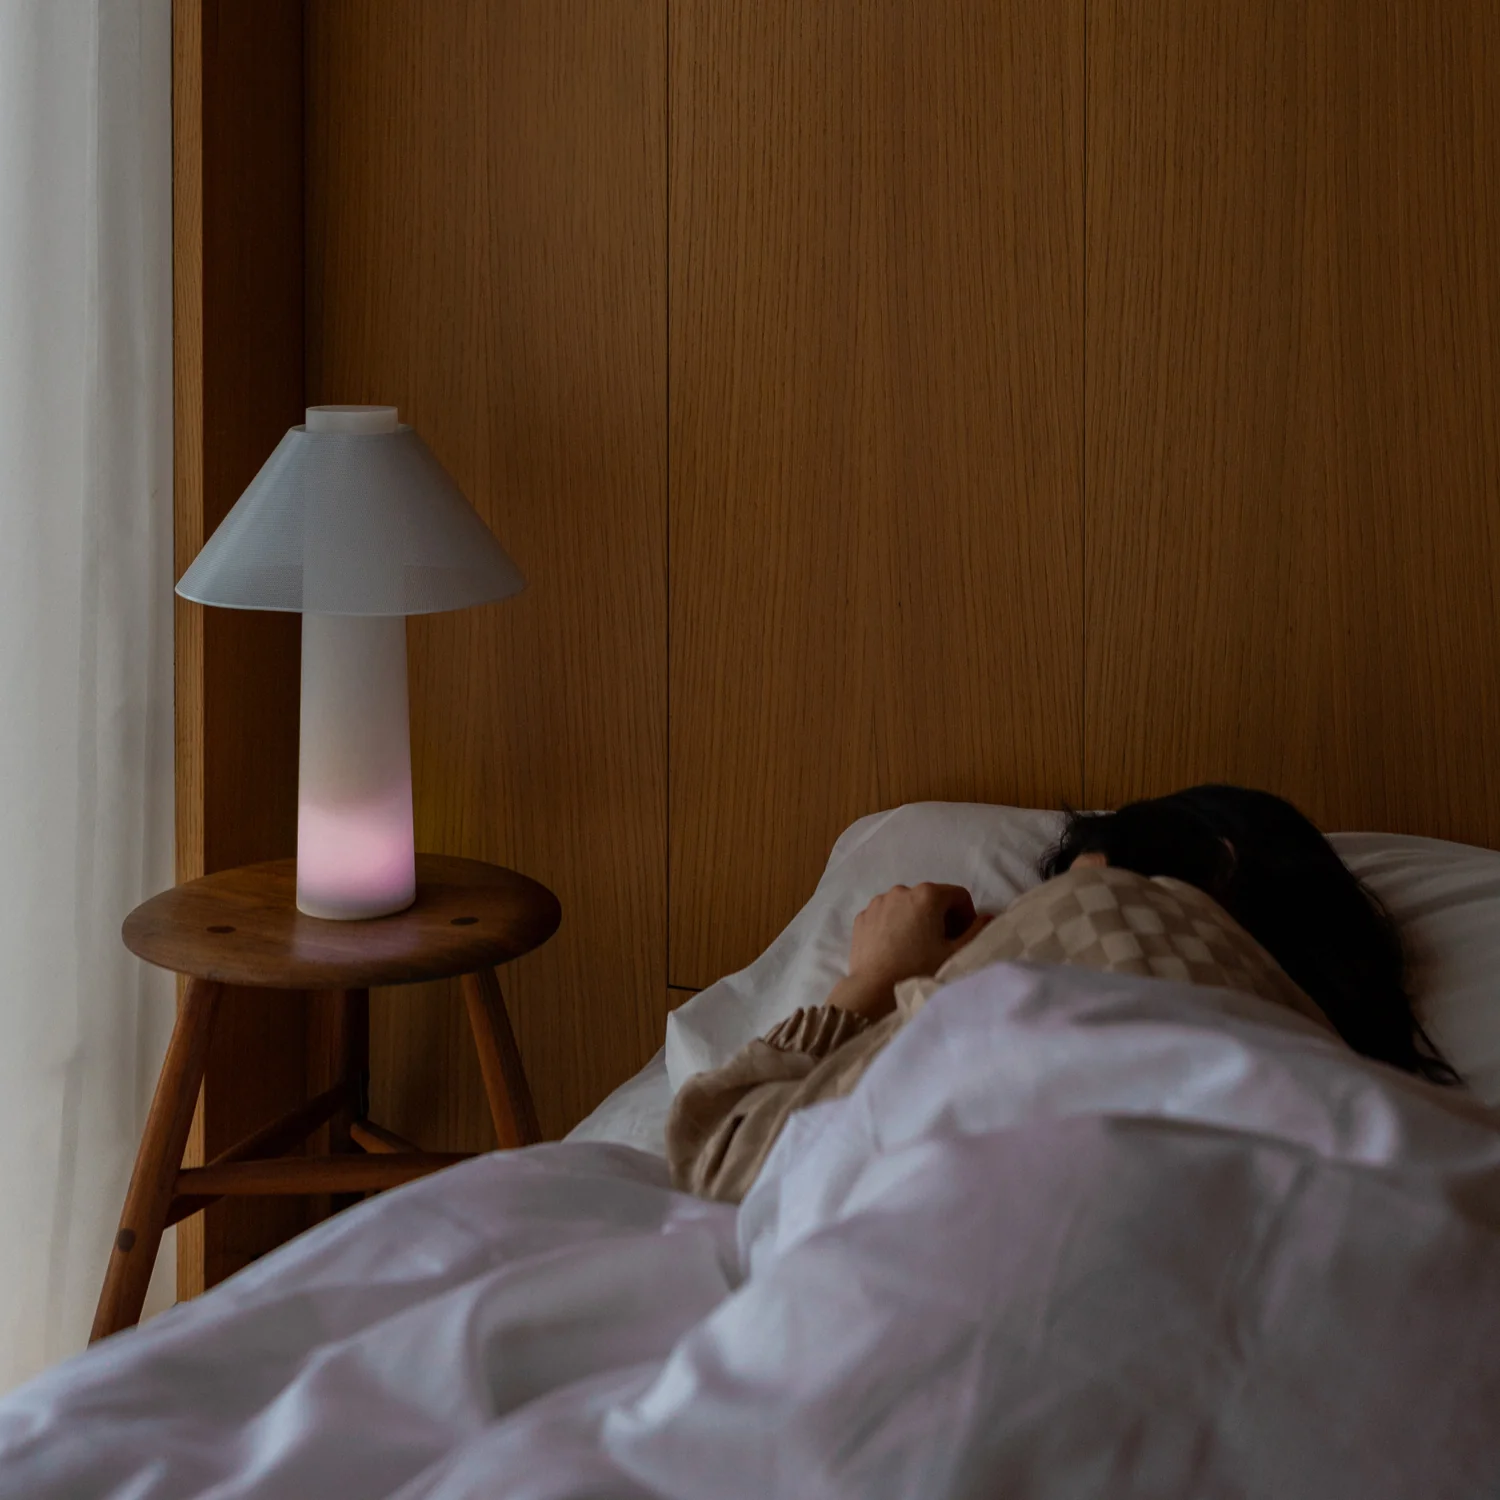 The Loftie Sunrise Lamp for Sleep